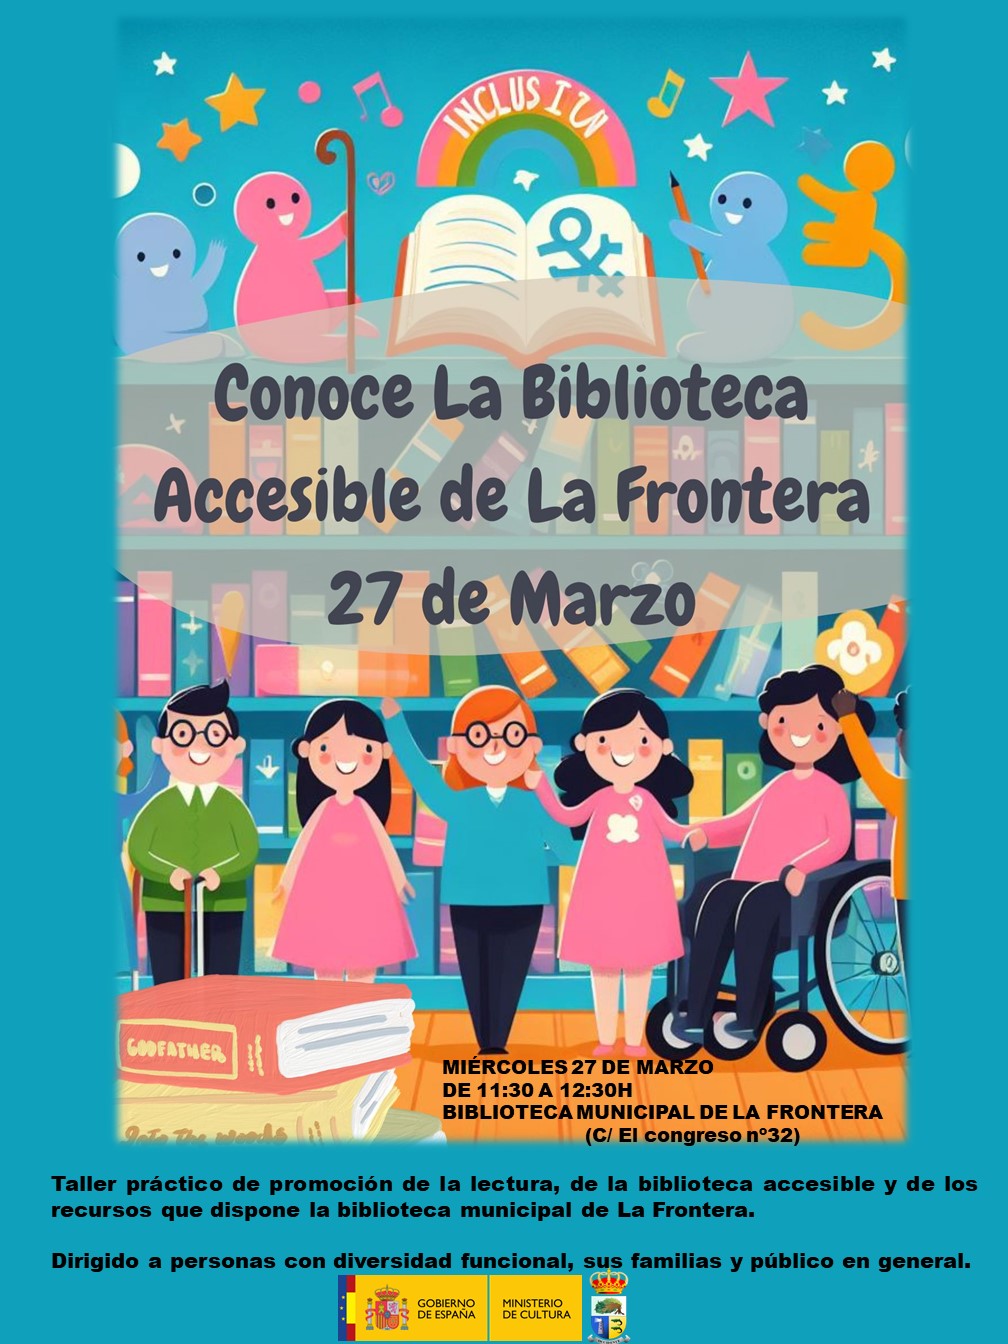 La biblioteca de La Frontera ofrece un taller de Promoción de la lectura y Recursos de la Biblioteca Accesible